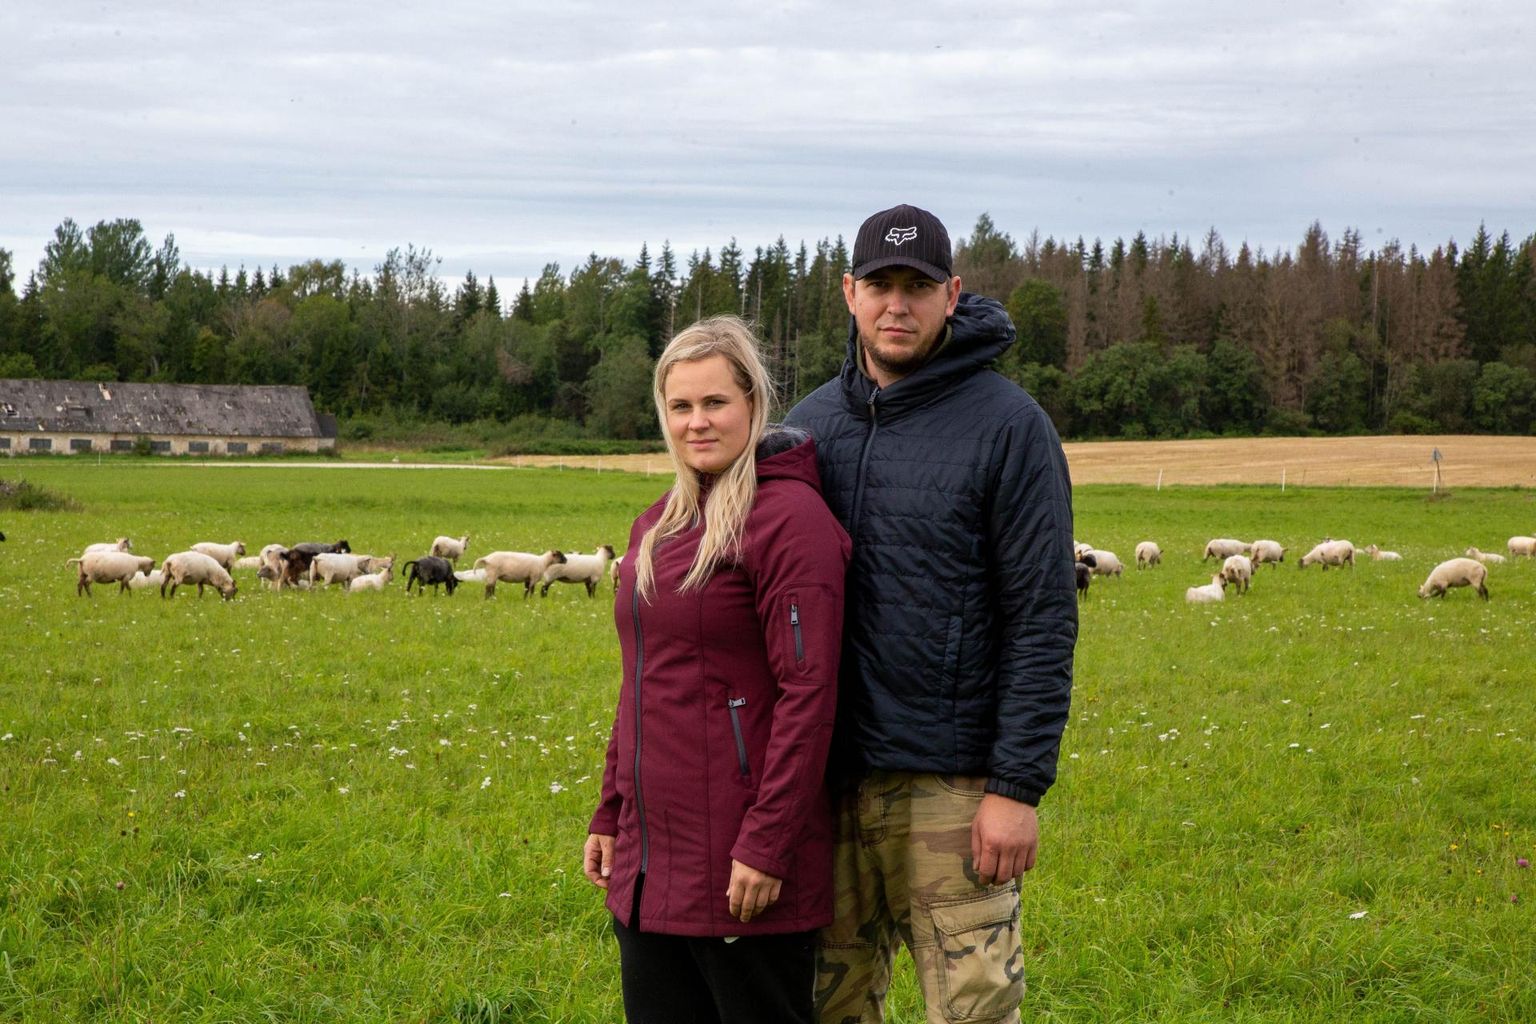 Vaatamata hundikindlaks arvatud aiale kaotas Saldre talu noorpere Mari-Liis ja Margus Männiku kari hundiründega 21 lammast. Kevadel lõid hallivatimehed hambad sisse kaheksale lambale.